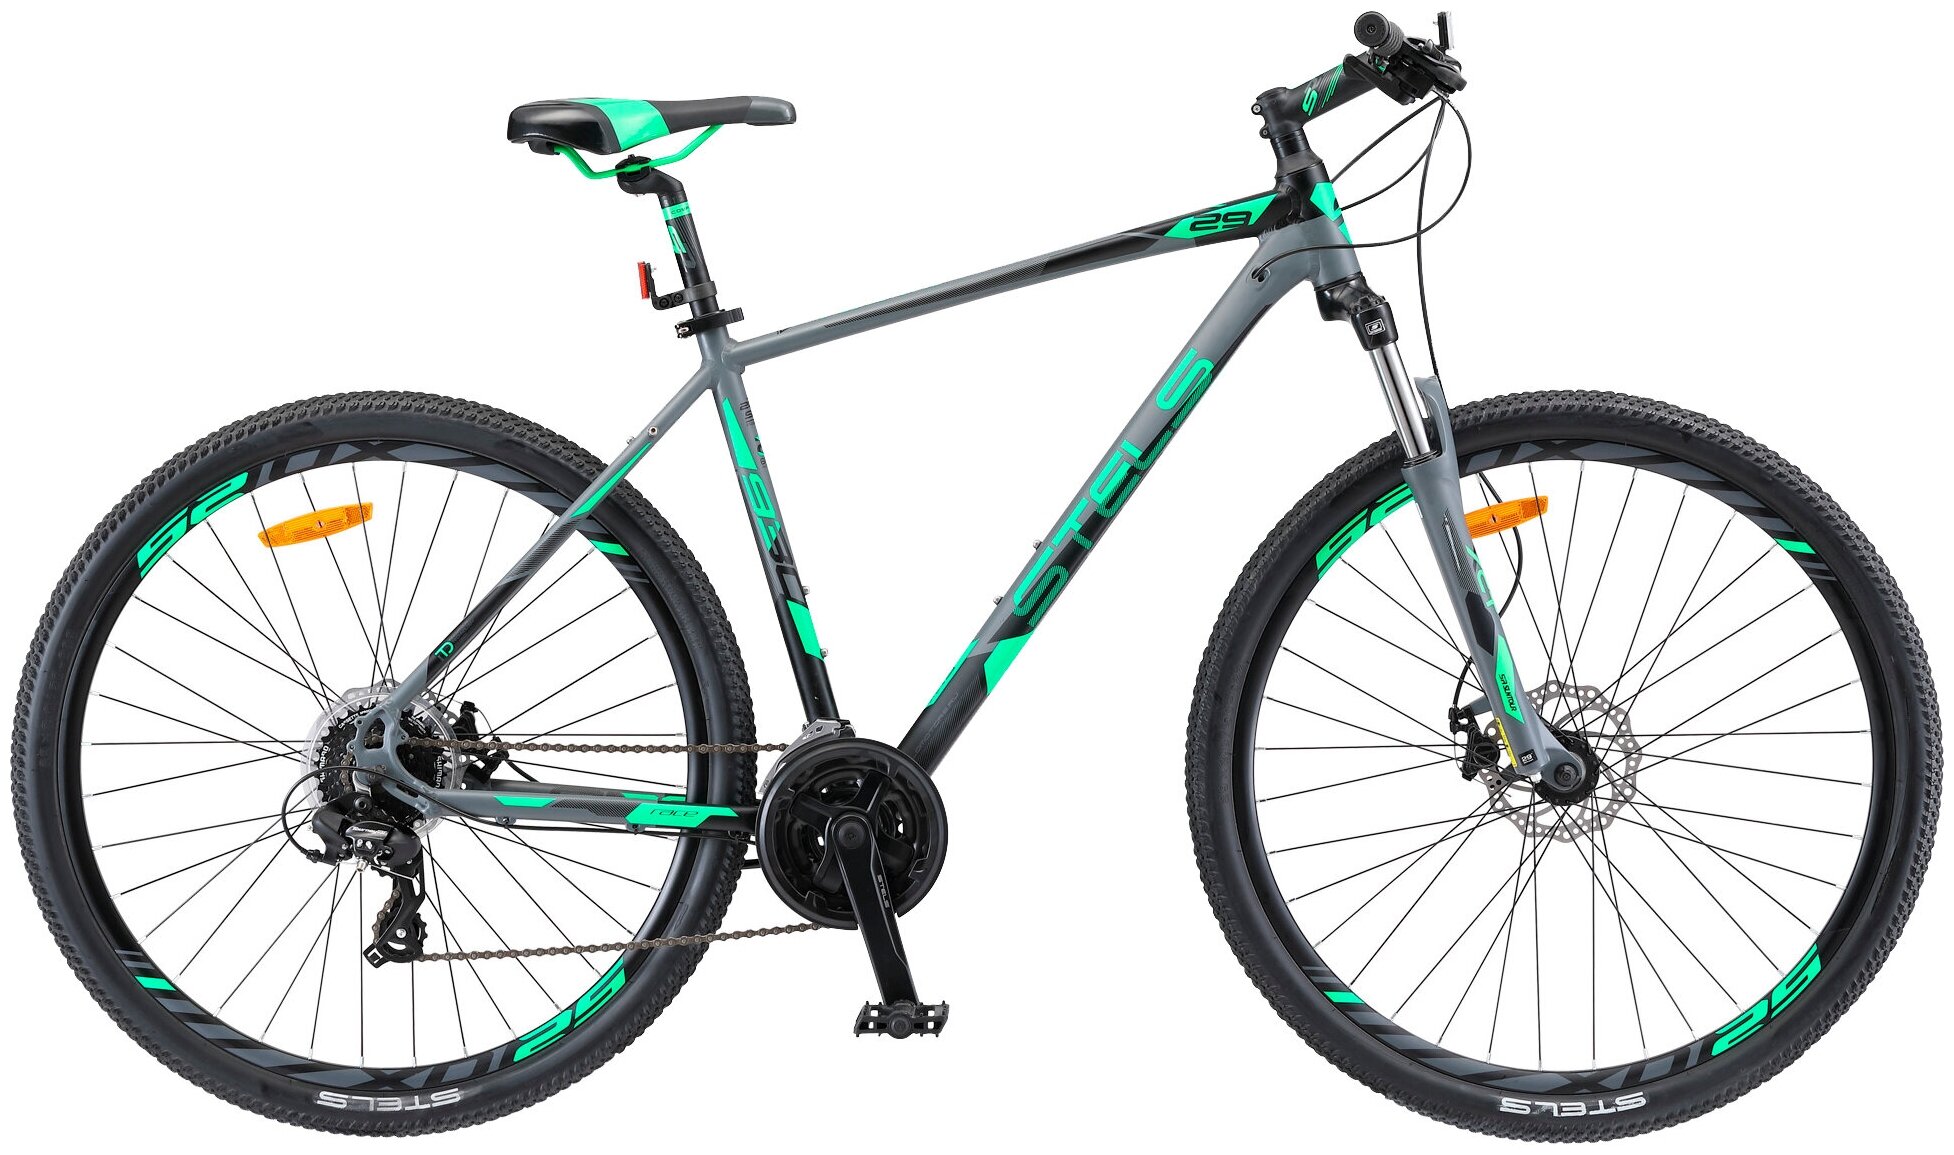 Горный (MTB) велосипед STELS Navigator 930 MD 29 V010 (2019) серый/черный 18.5" (требует финальной сборки)